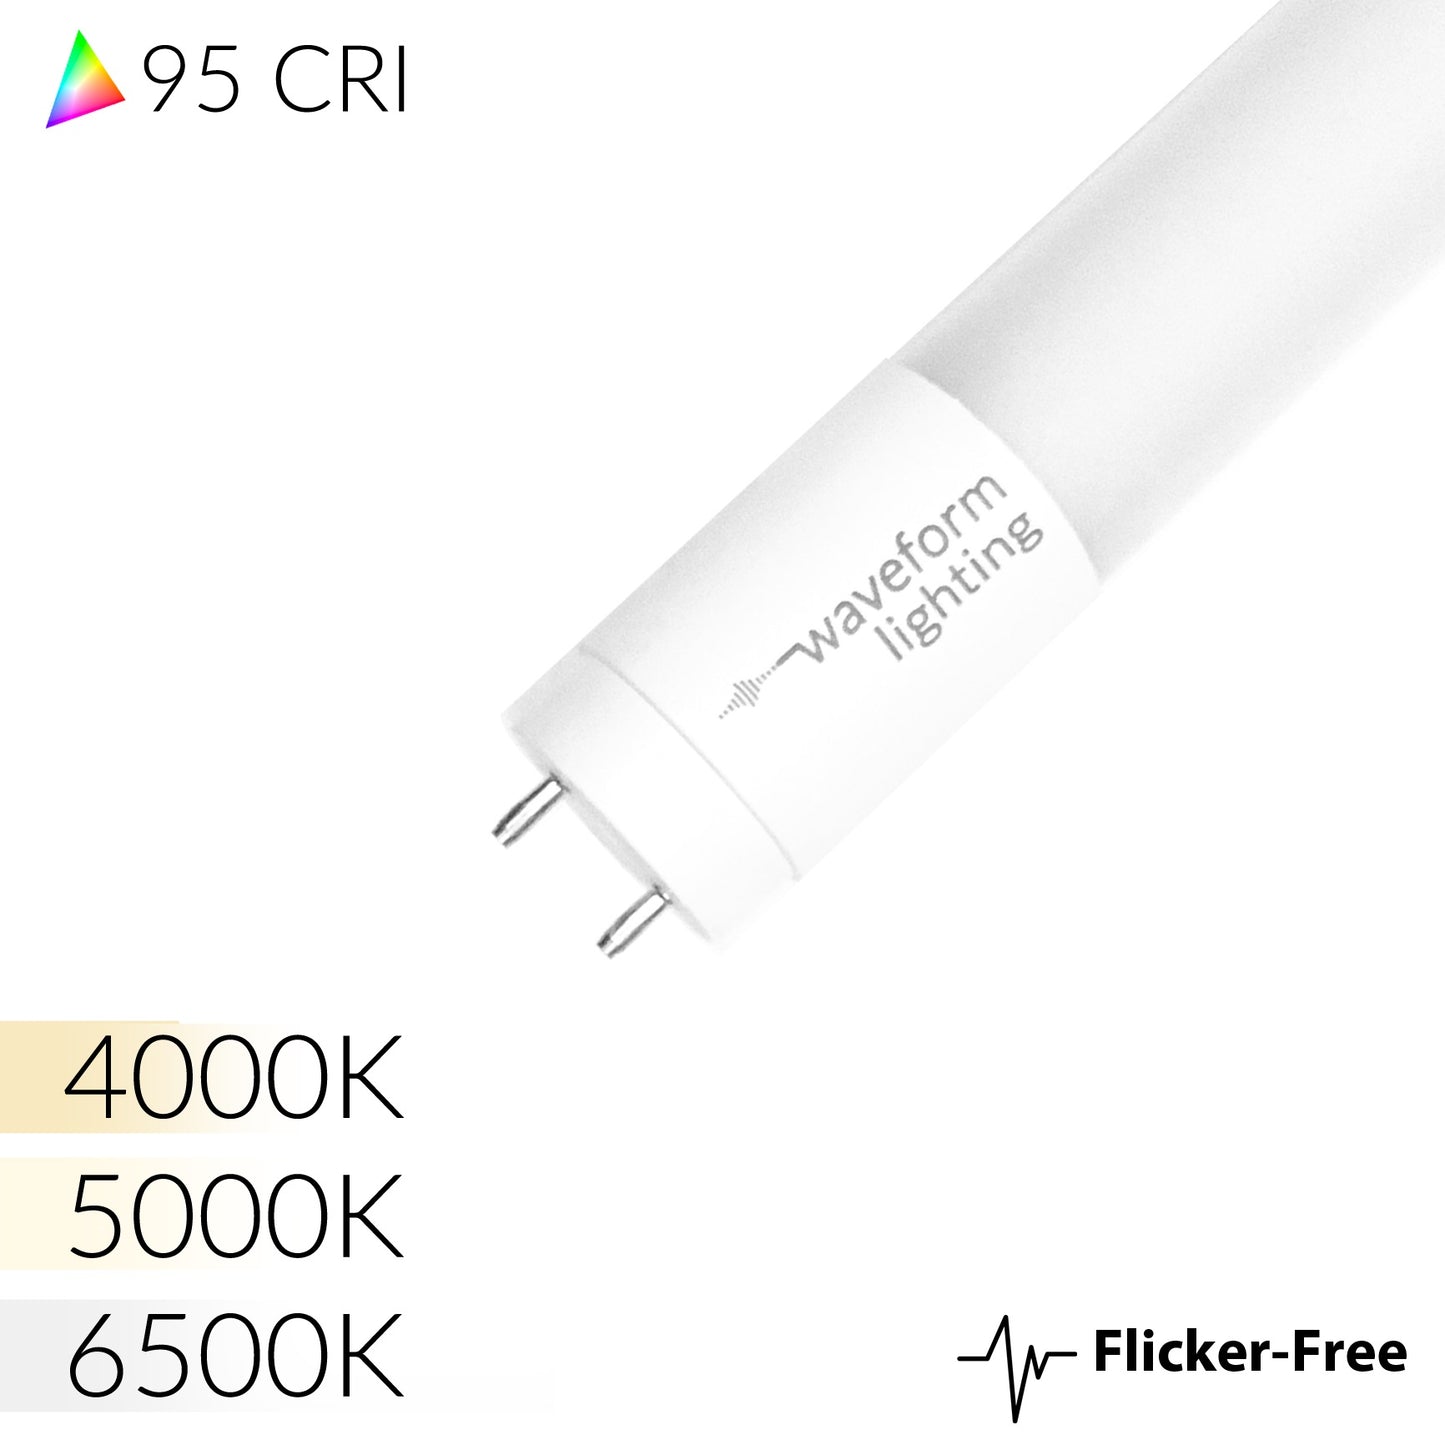 CENTRIC DAYLIGHT™ Full Spectrum Flicker-Free T8 LED Tube Light